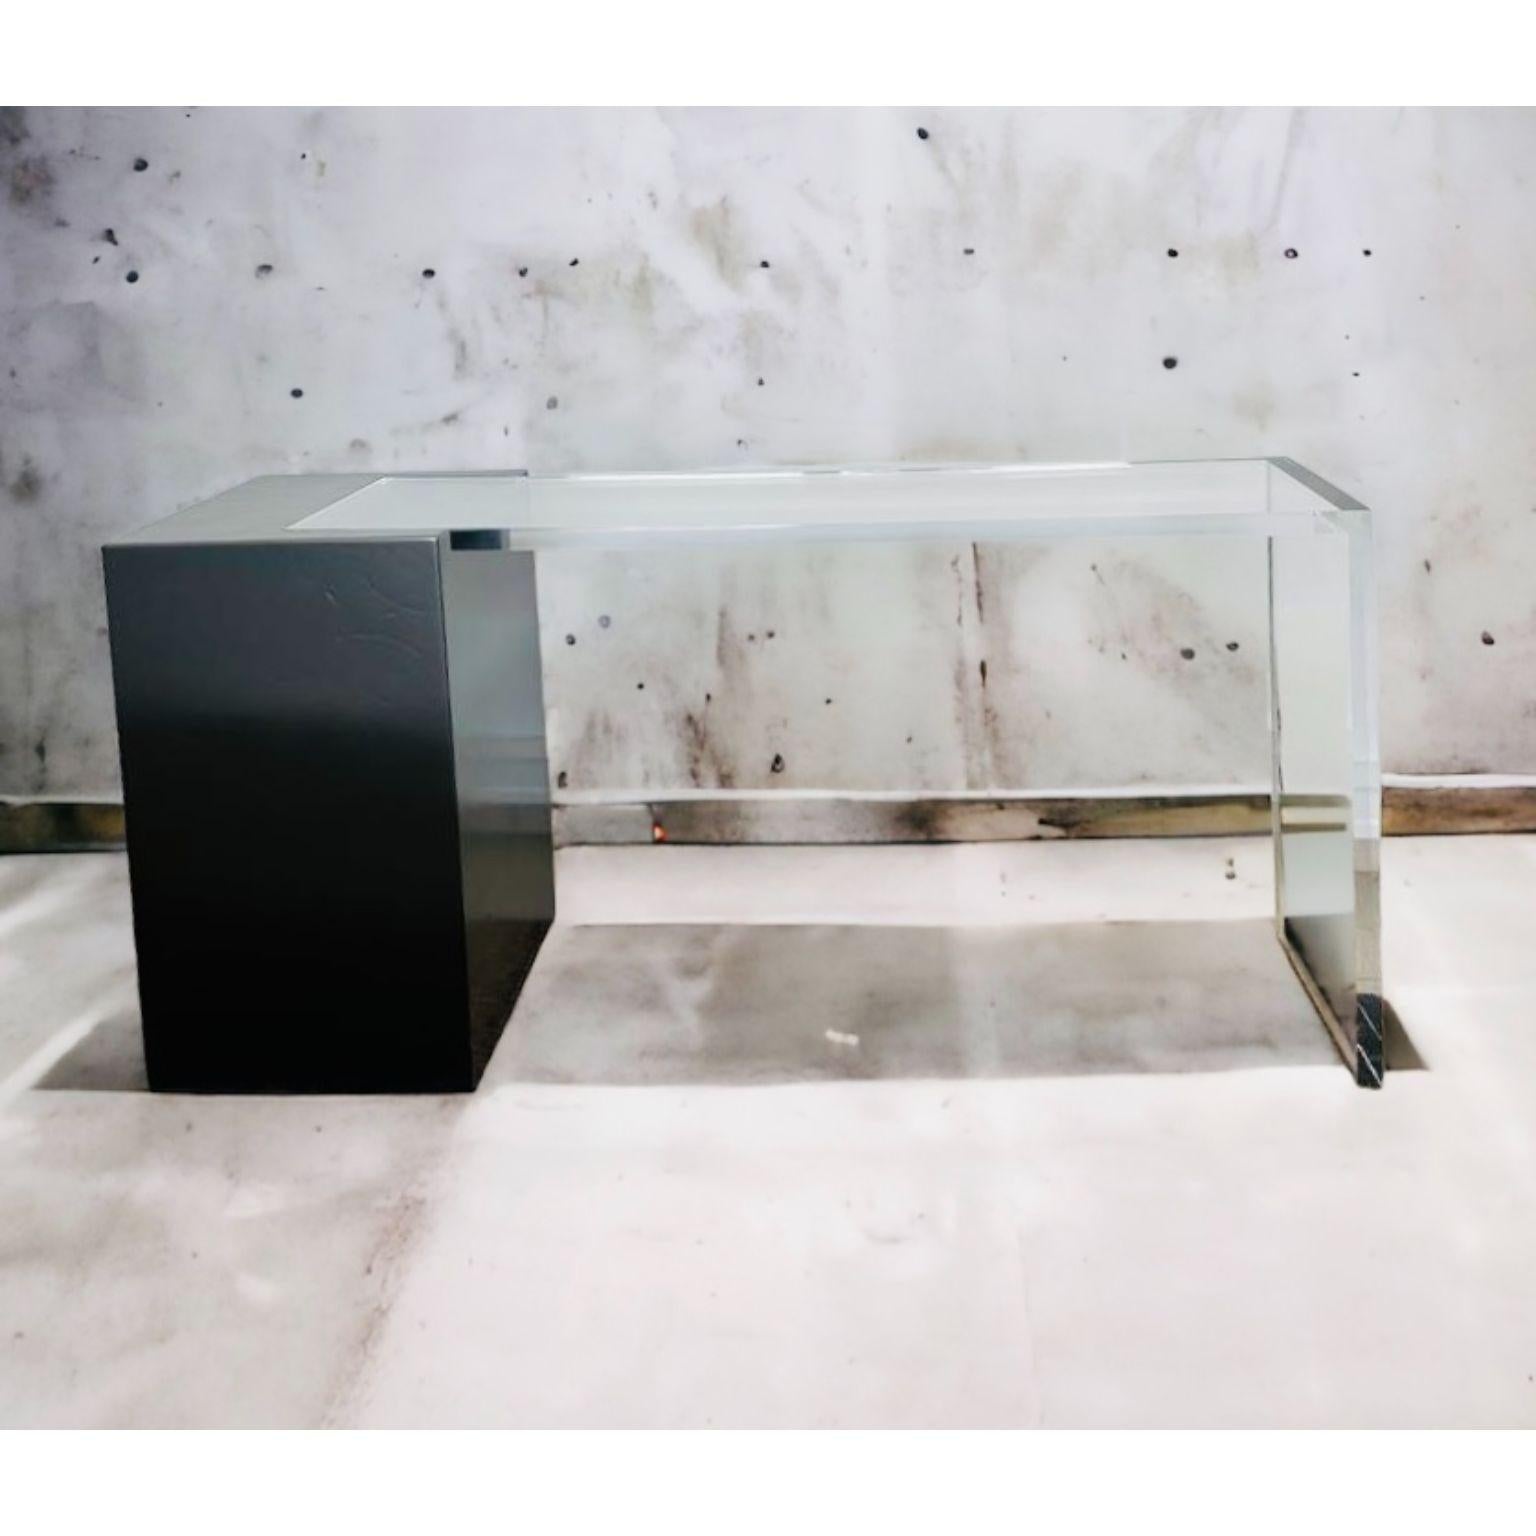 Ghost, schwarzer Konsolentisch von Charly Bounan
Einzigartig
Abmessungen: T 35 x B 150 x H 75 cm. 
MATERIALIEN: Acrylglas und lackierter Stahl.

Auch in einer anderen Farbvariante erhältlich. Bitte kontaktieren Sie uns.

Charly Bounan ist ein